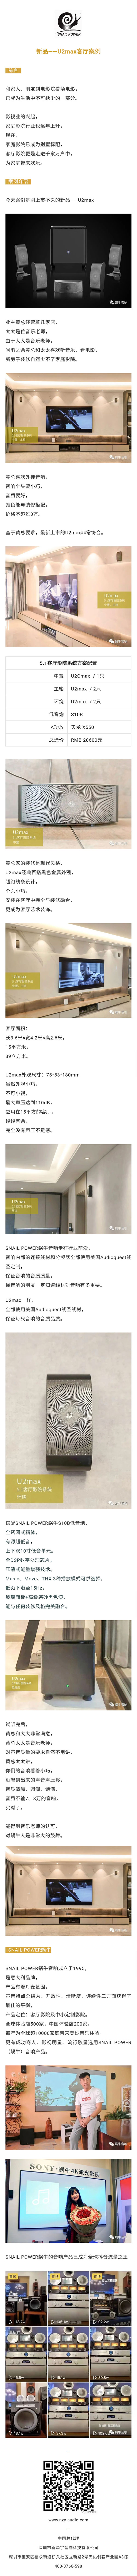 意大利蜗牛Snail Power音响中国总代U2max